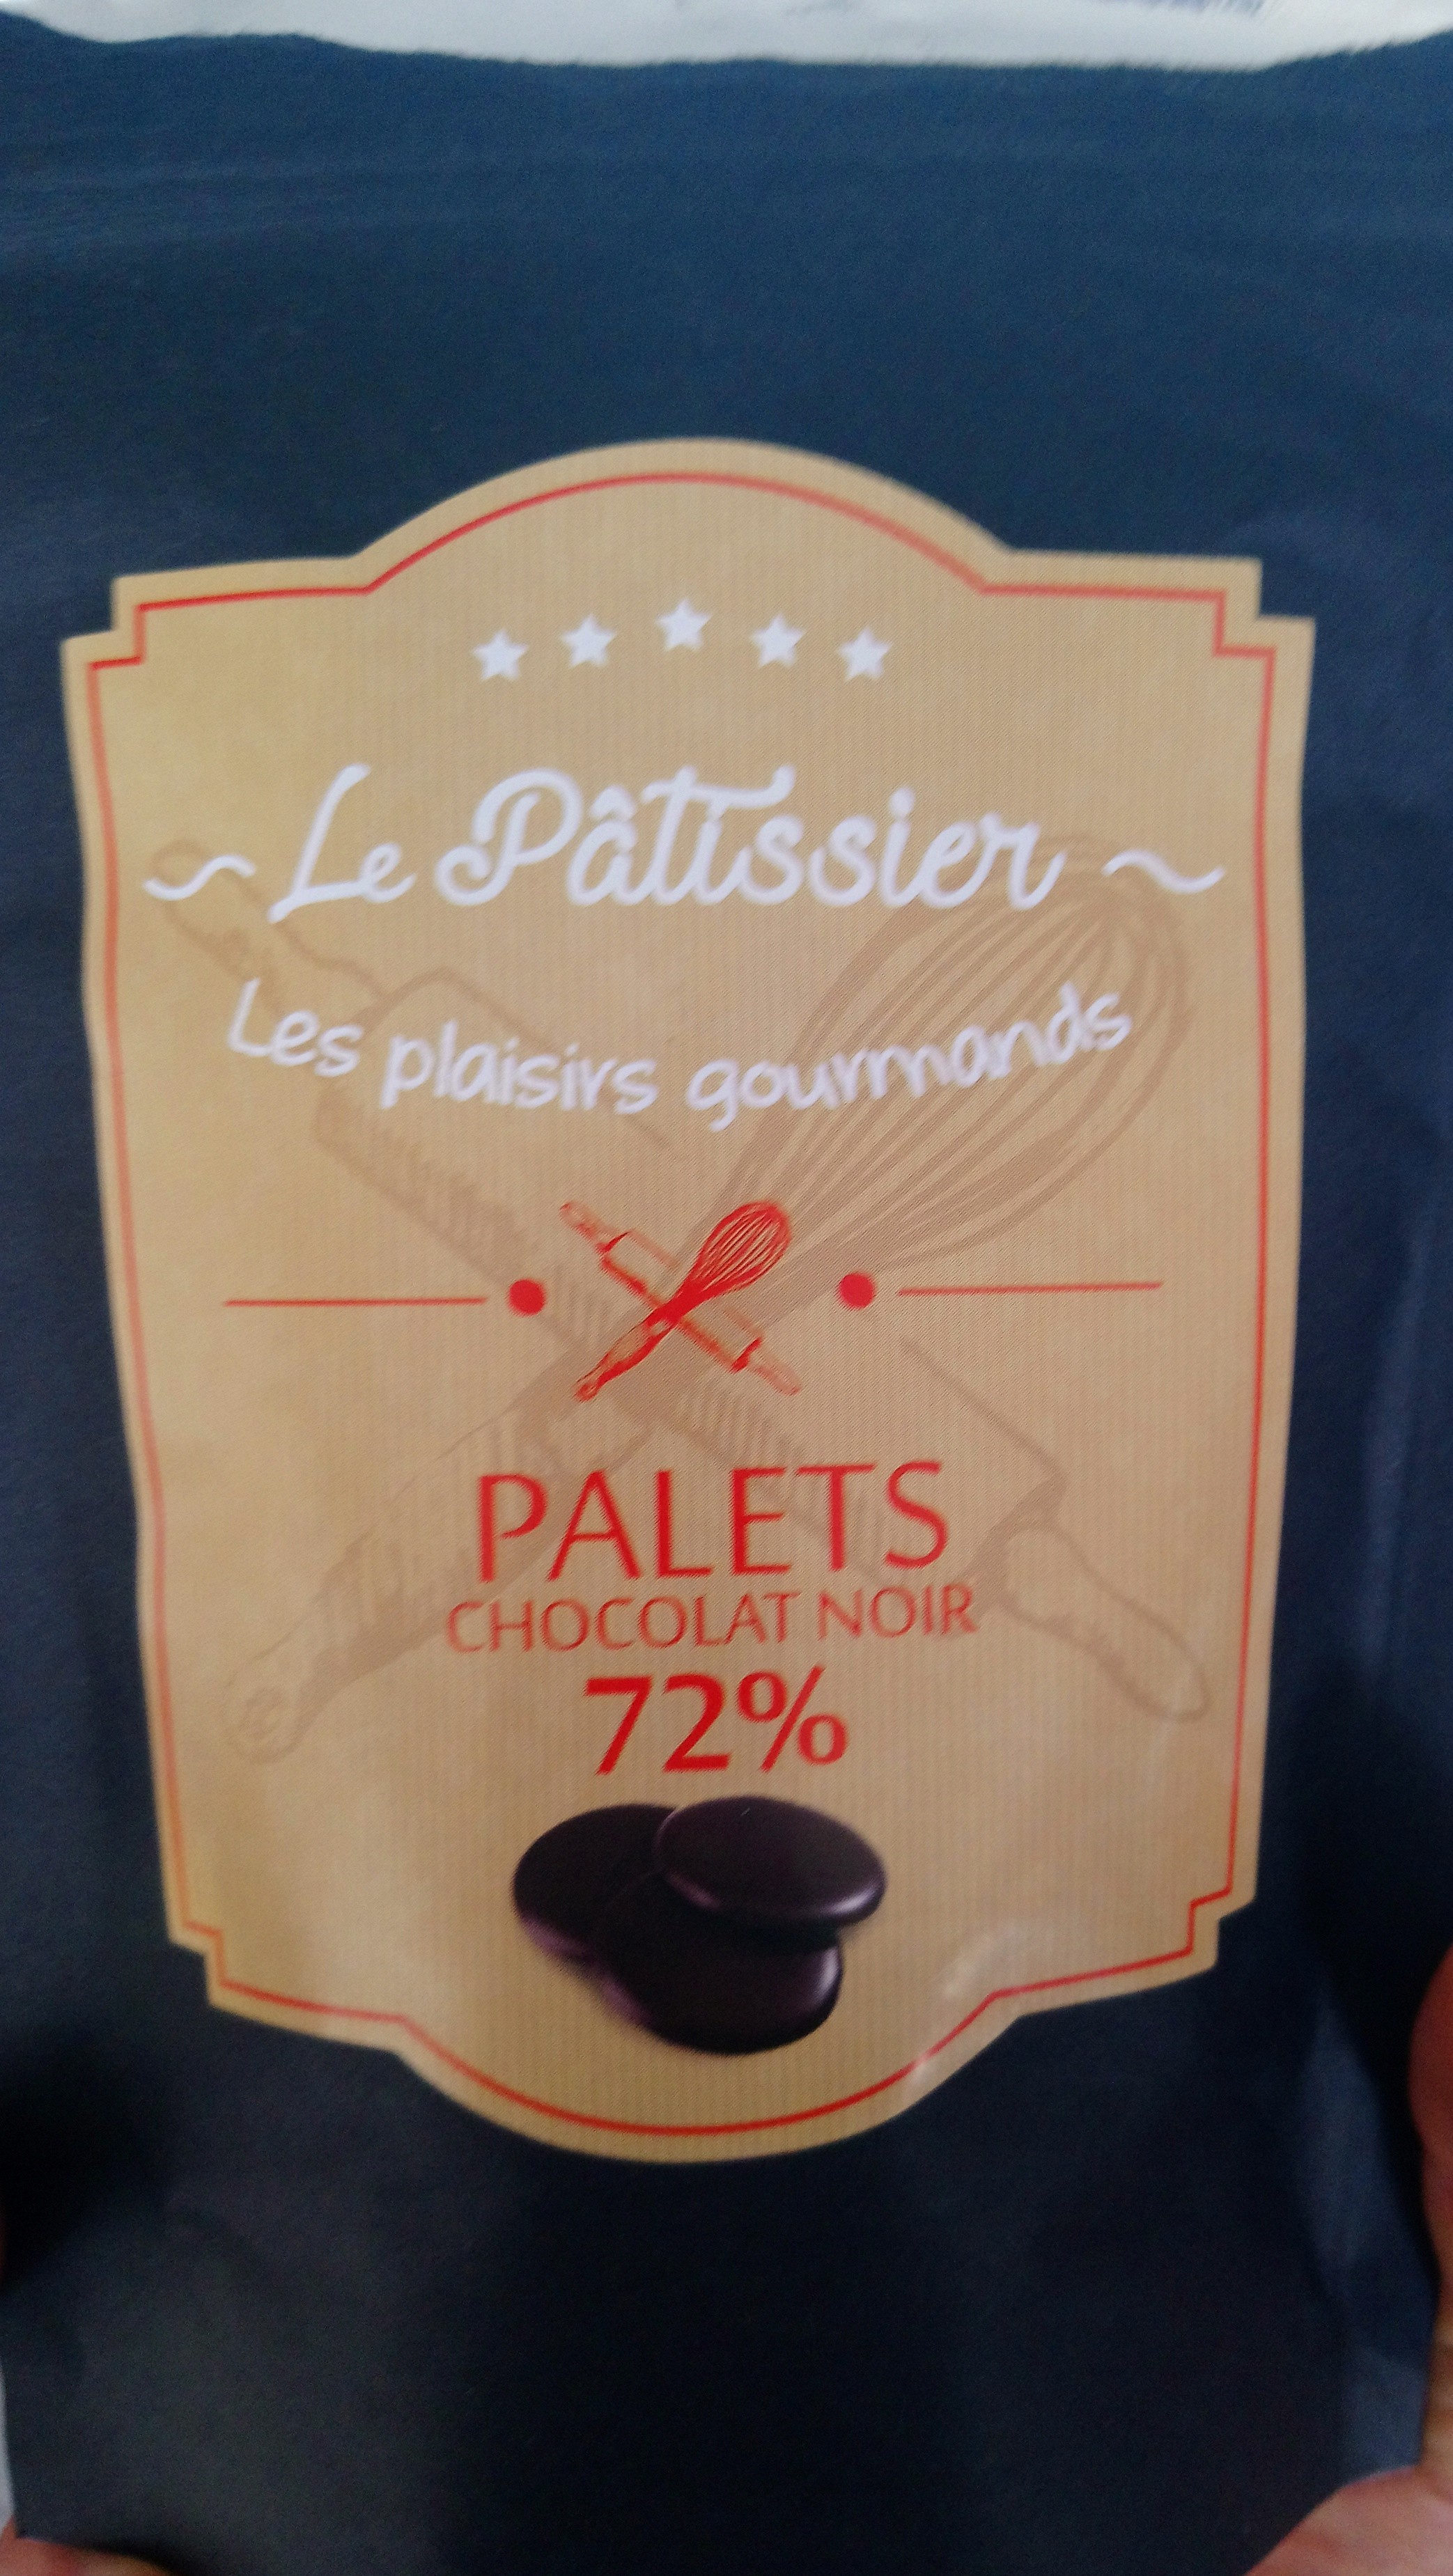 les plaisirs gourmands palets 72% chocolat noir - Product - fr